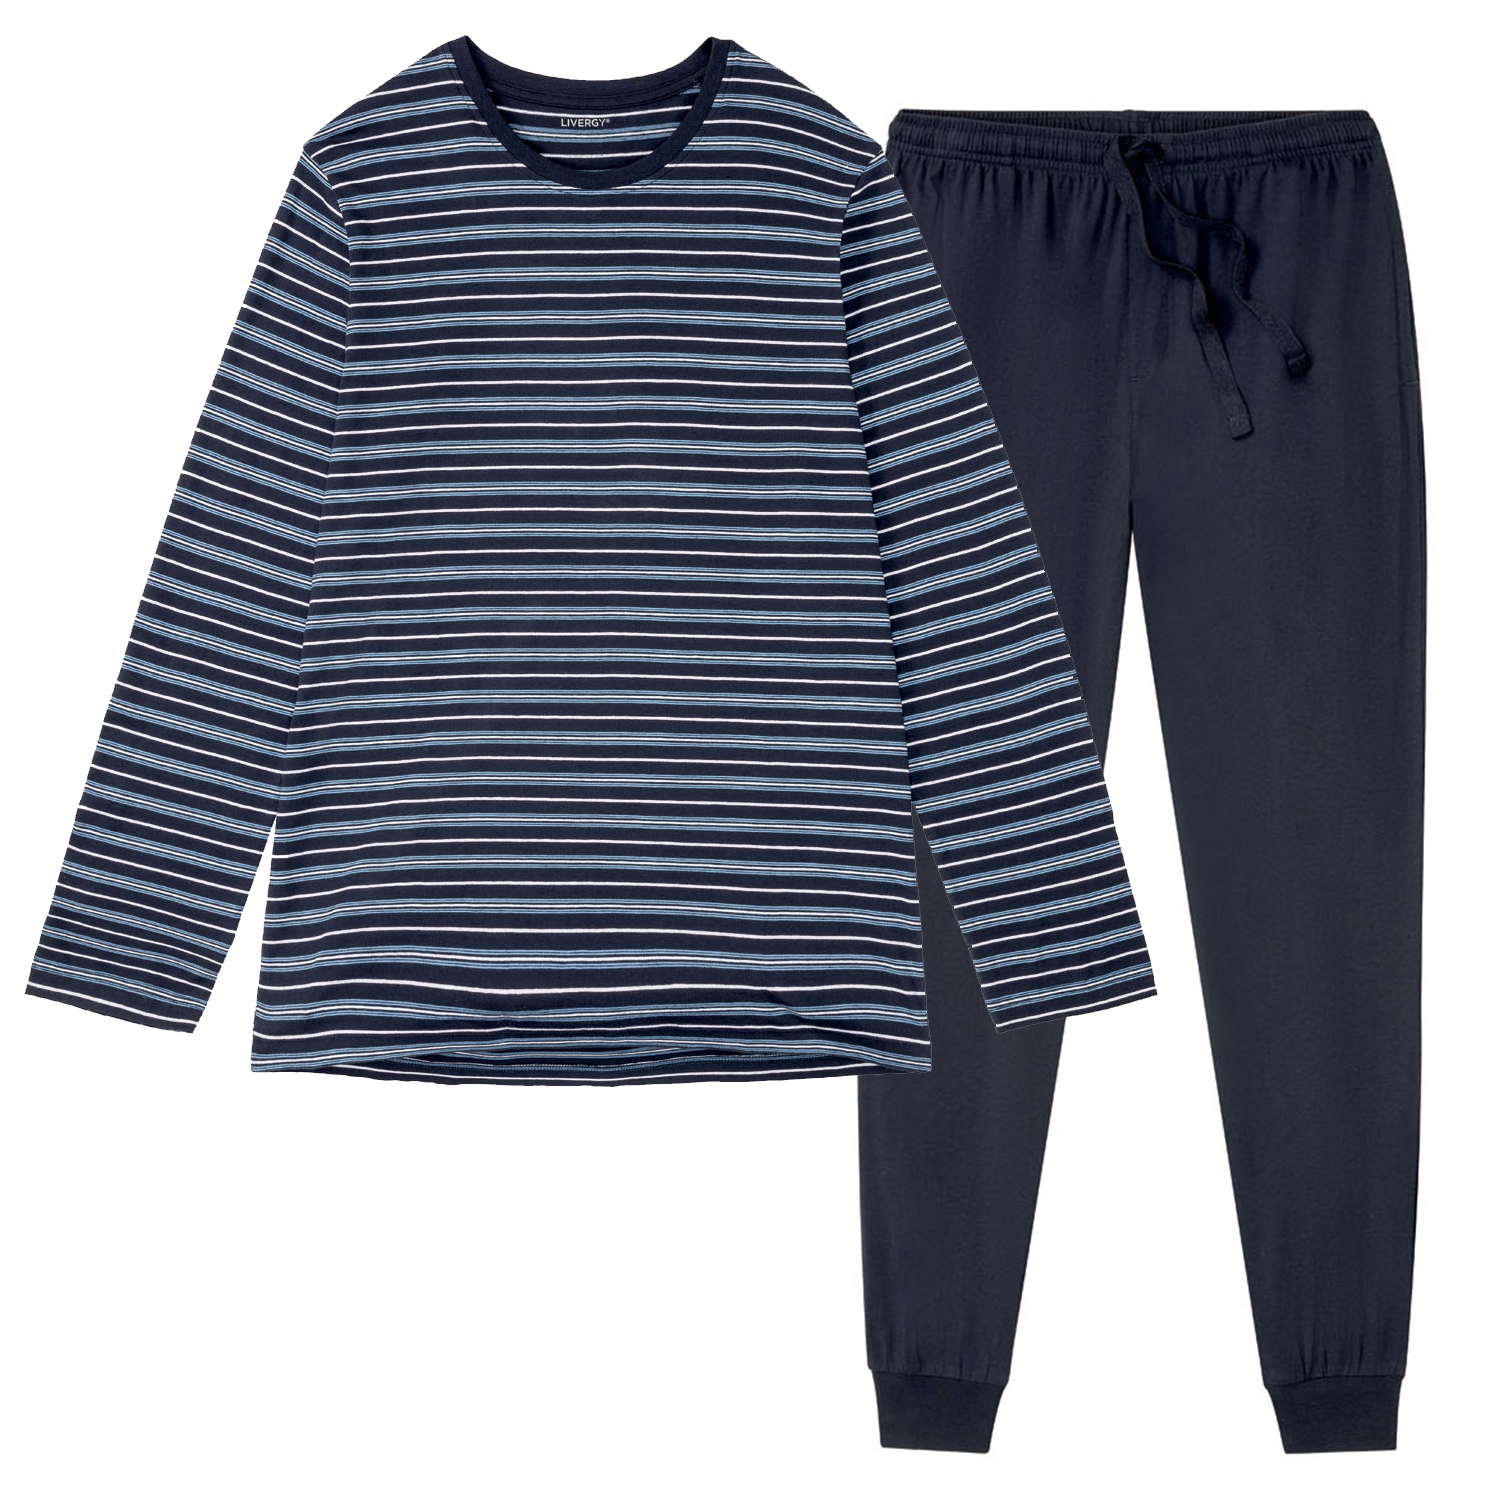 ست تی شرت و شلوار مردانه لیورجی مدل پرستیژ راه راه کد Prestig2022RR رنگ آبی